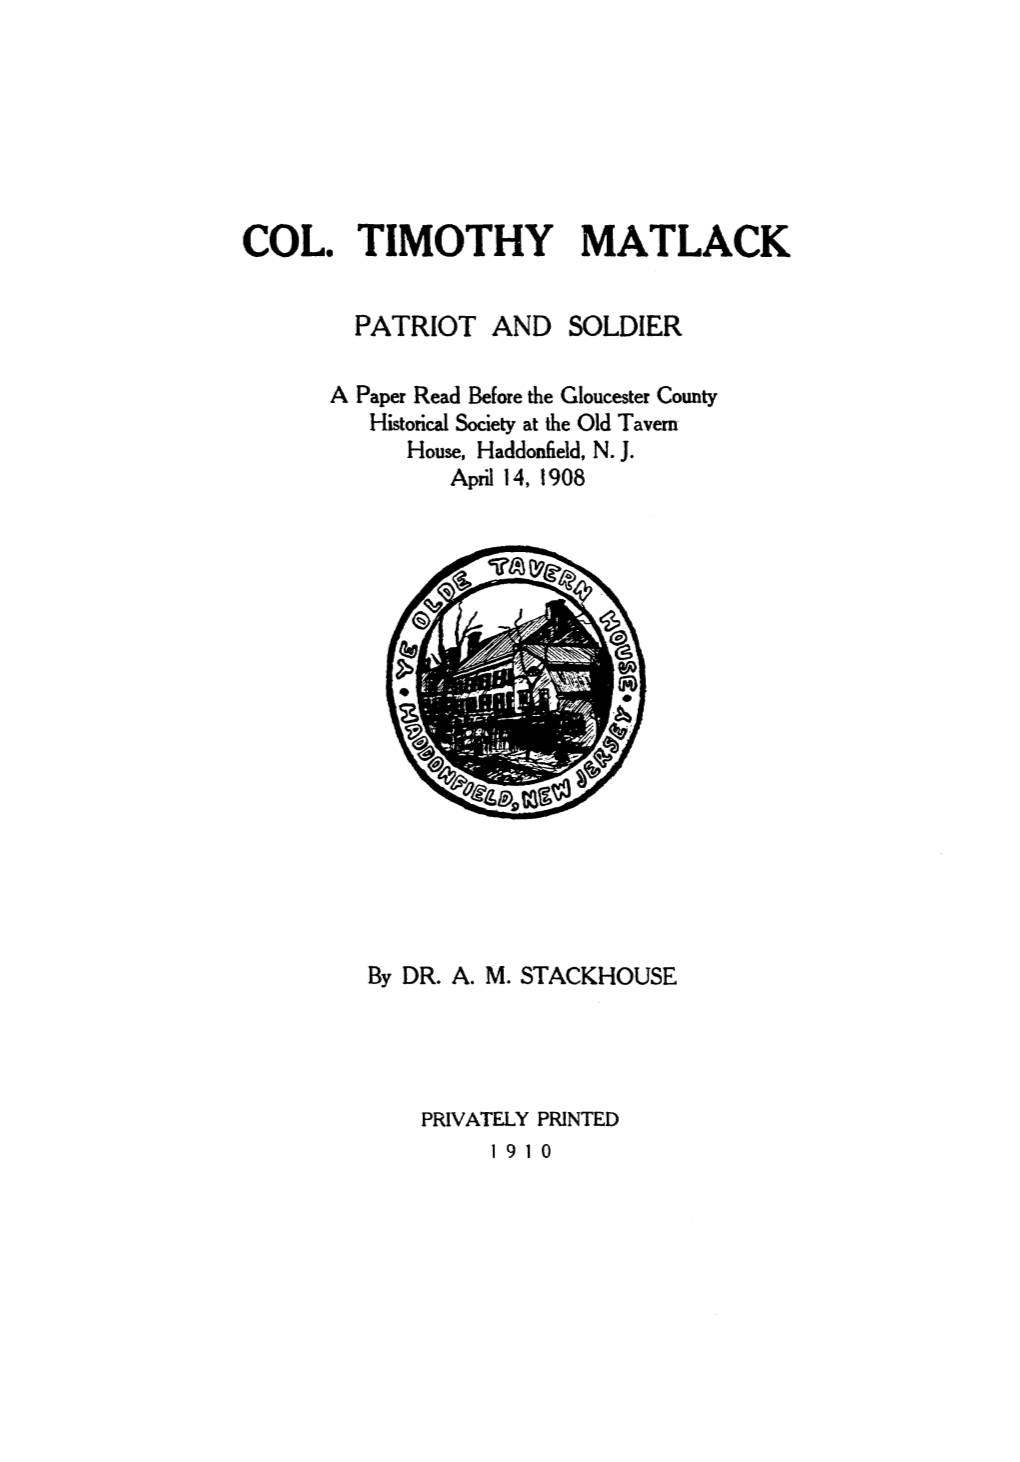 Col. Timothy Matlack